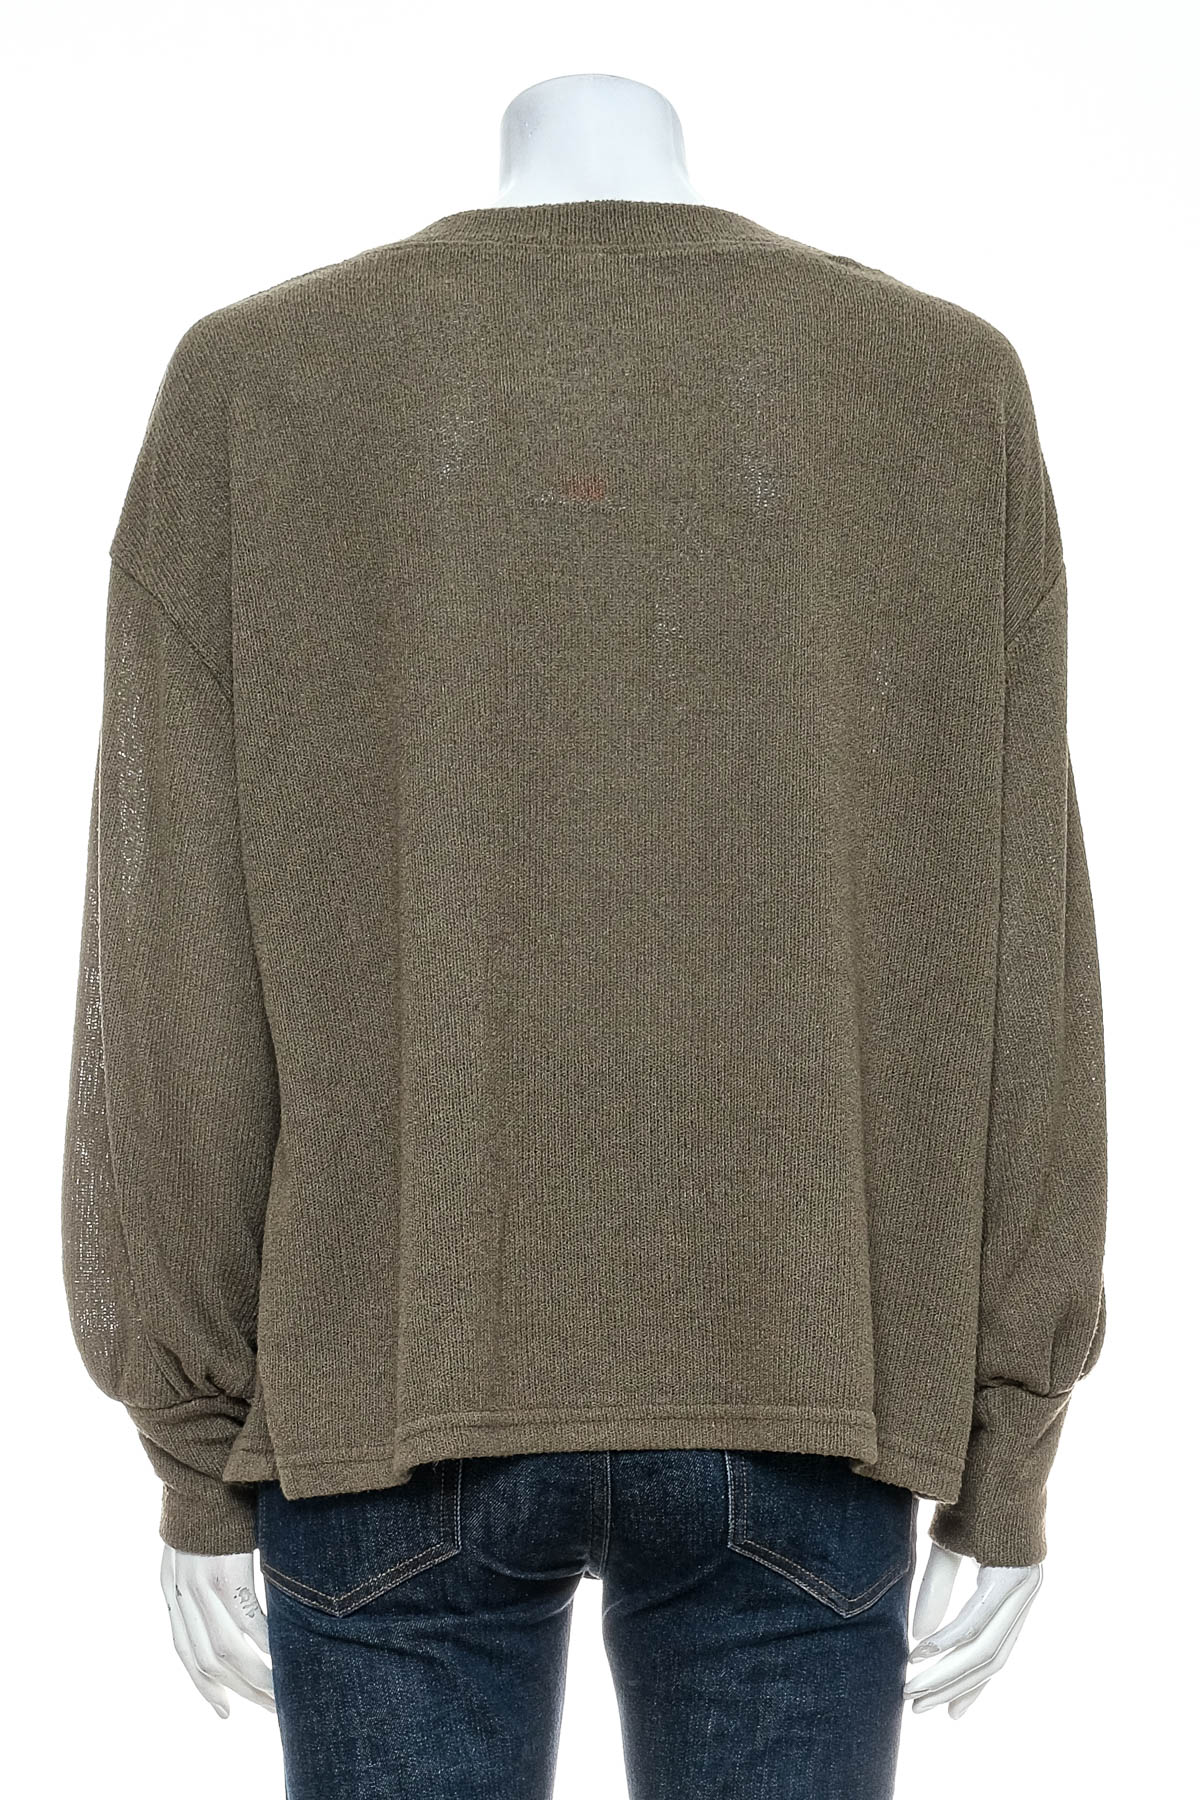 Women's sweater - Avella - 1